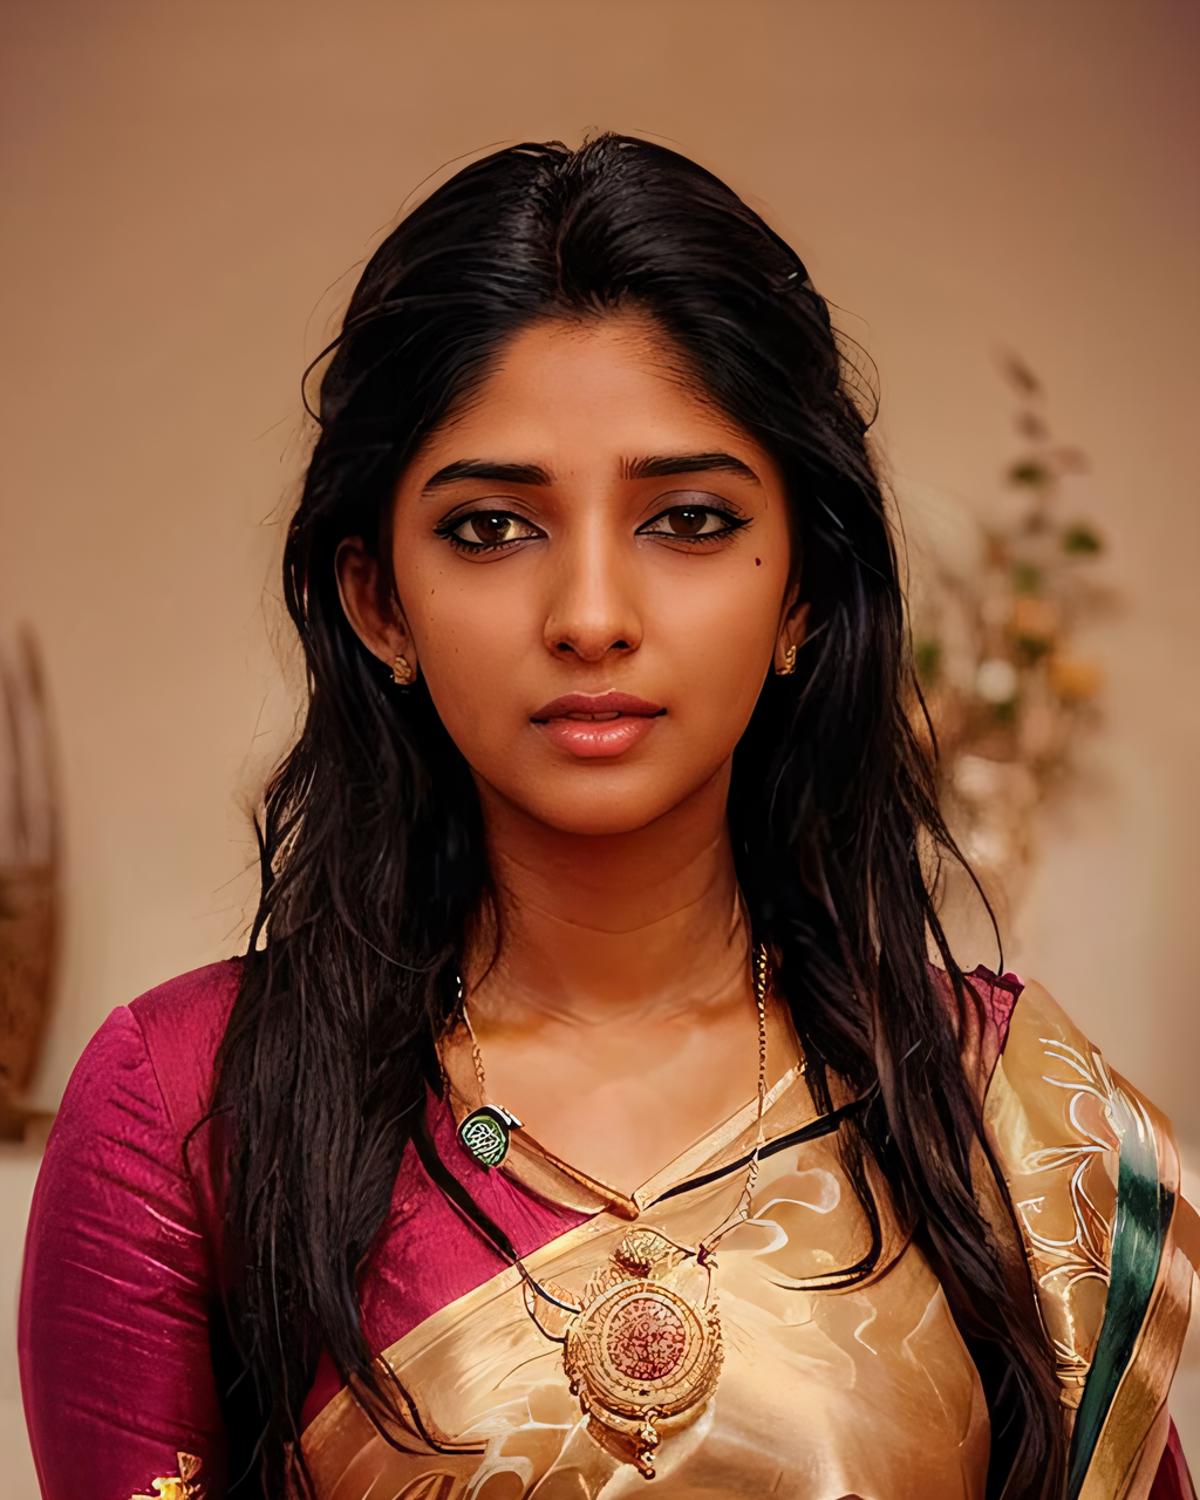 Nyla Usha - Indian Actress/ RJ (SD1.5) image by Desi_Cafe